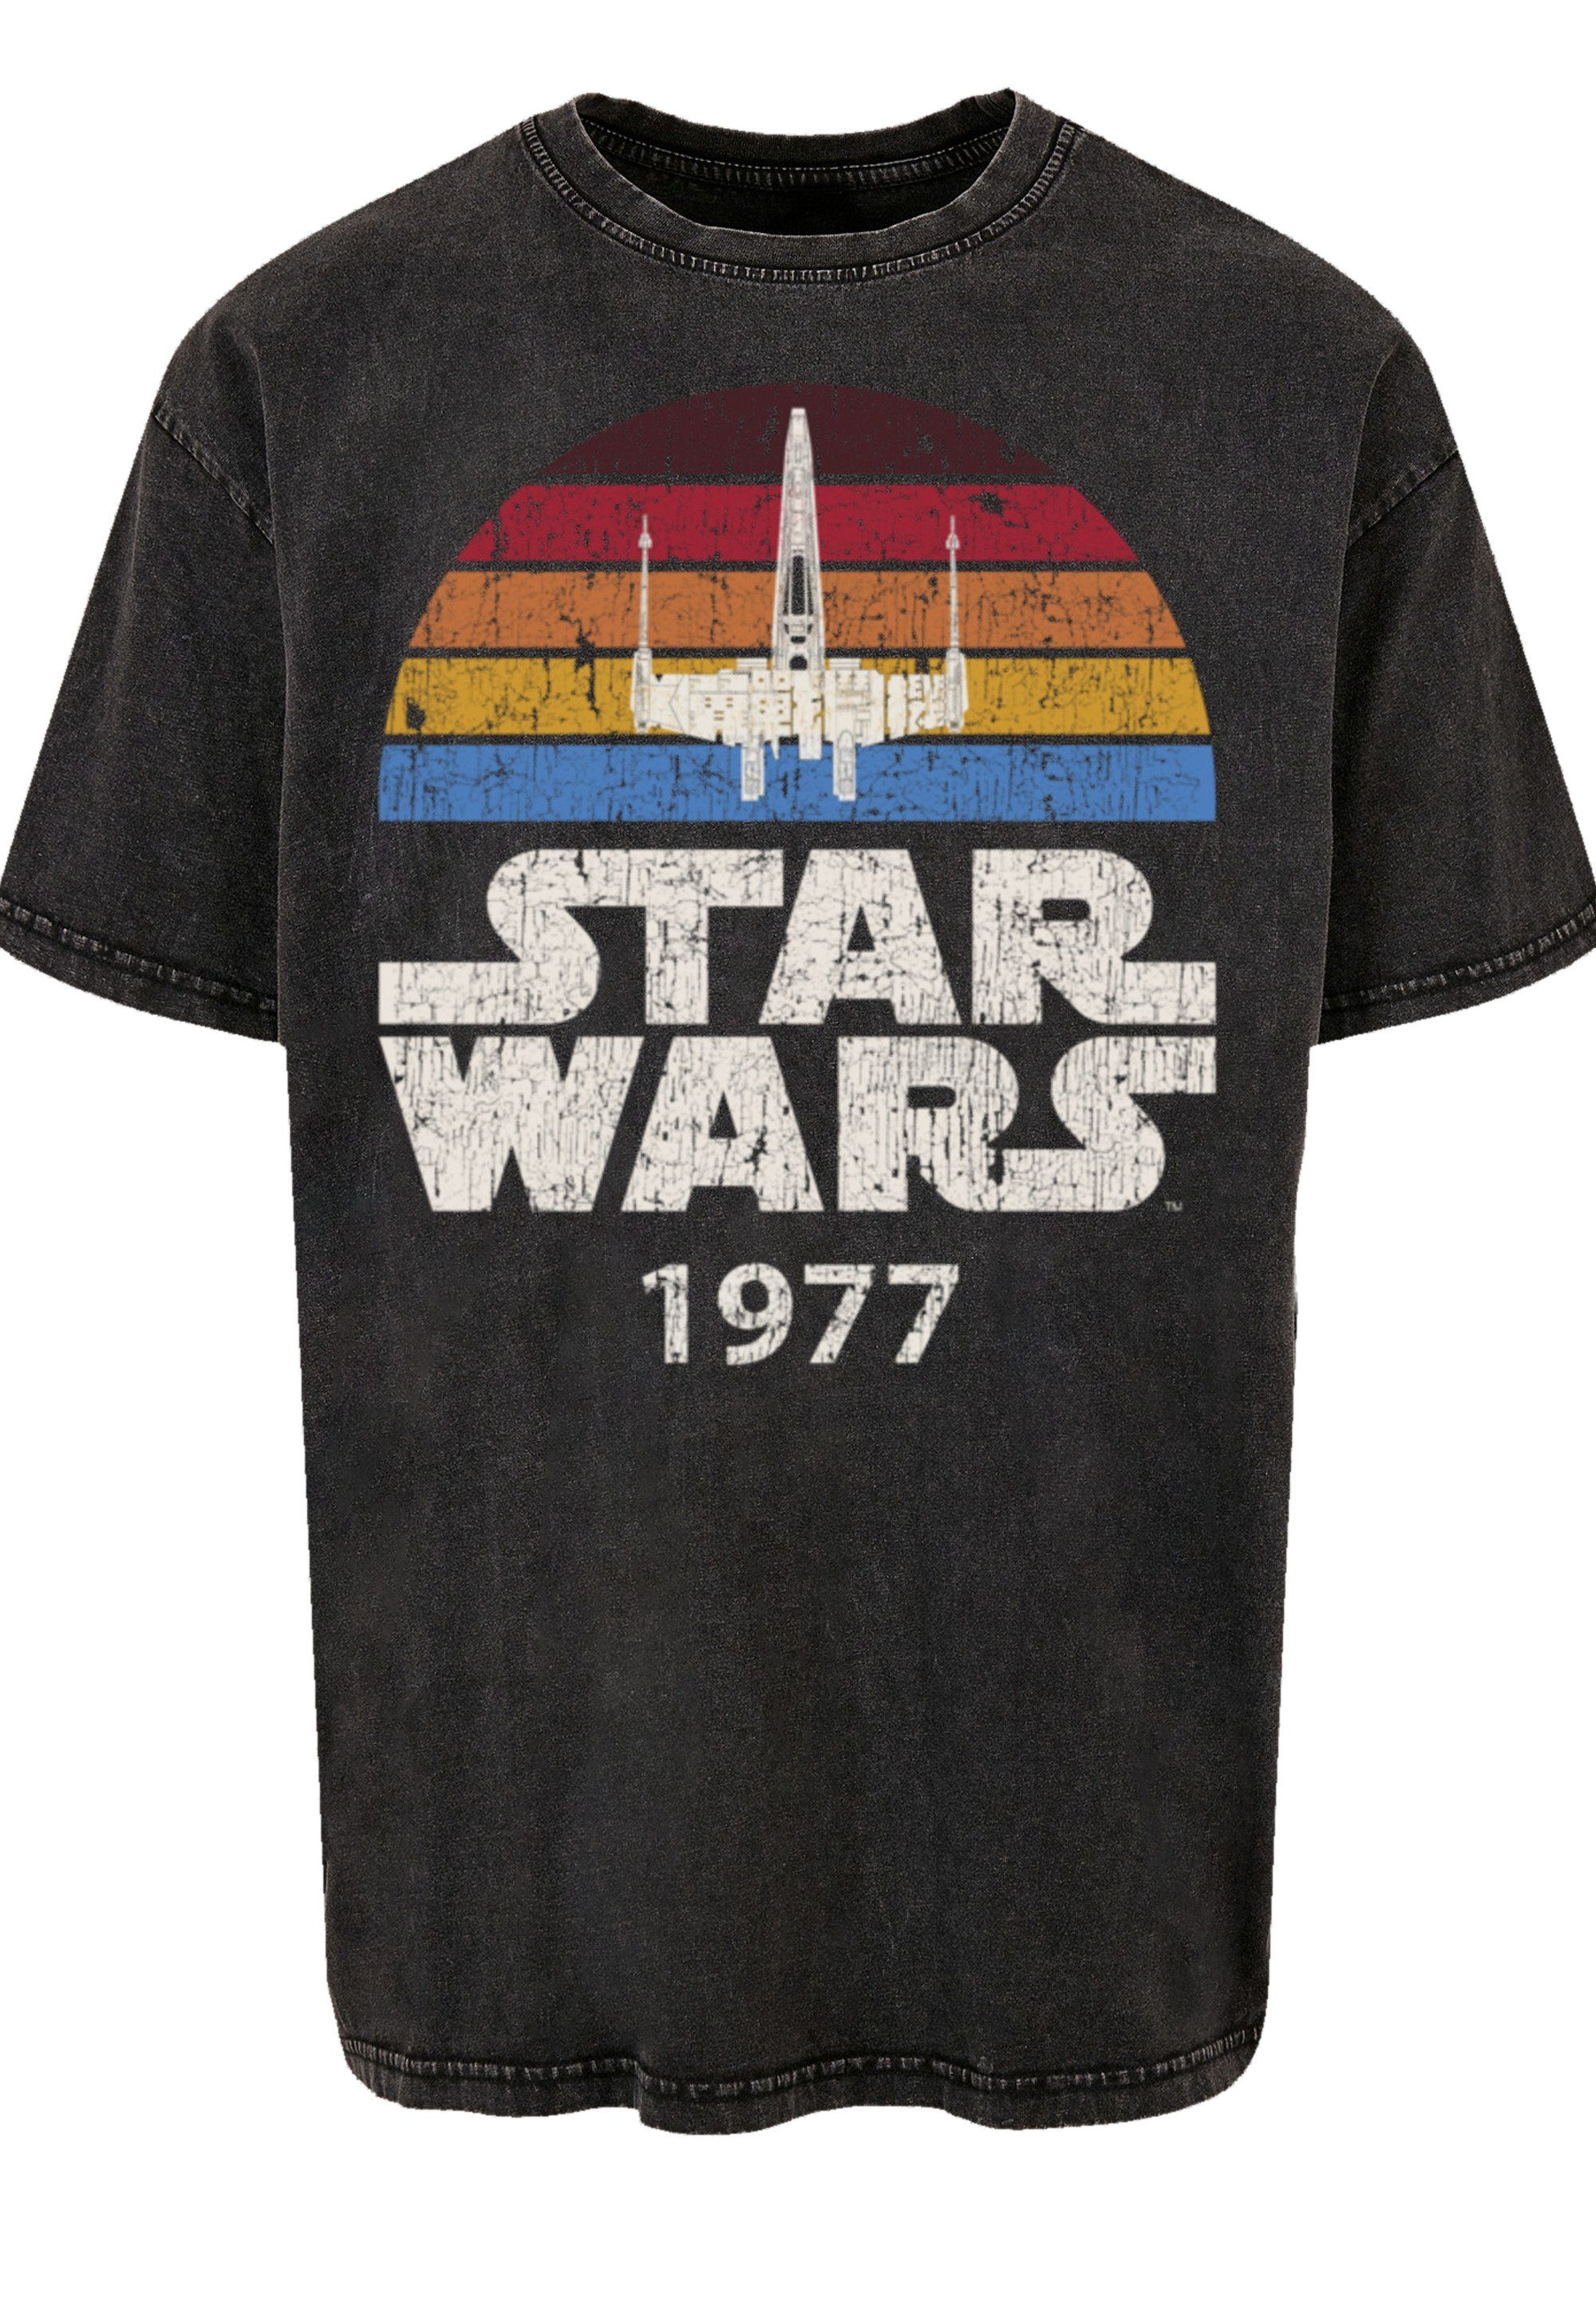 Offiziell Premium Wars Trip F4NT4STIC Star lizenziertes X-Wing Star Wars T T-Shirt T-Shirt Qualität, 1977